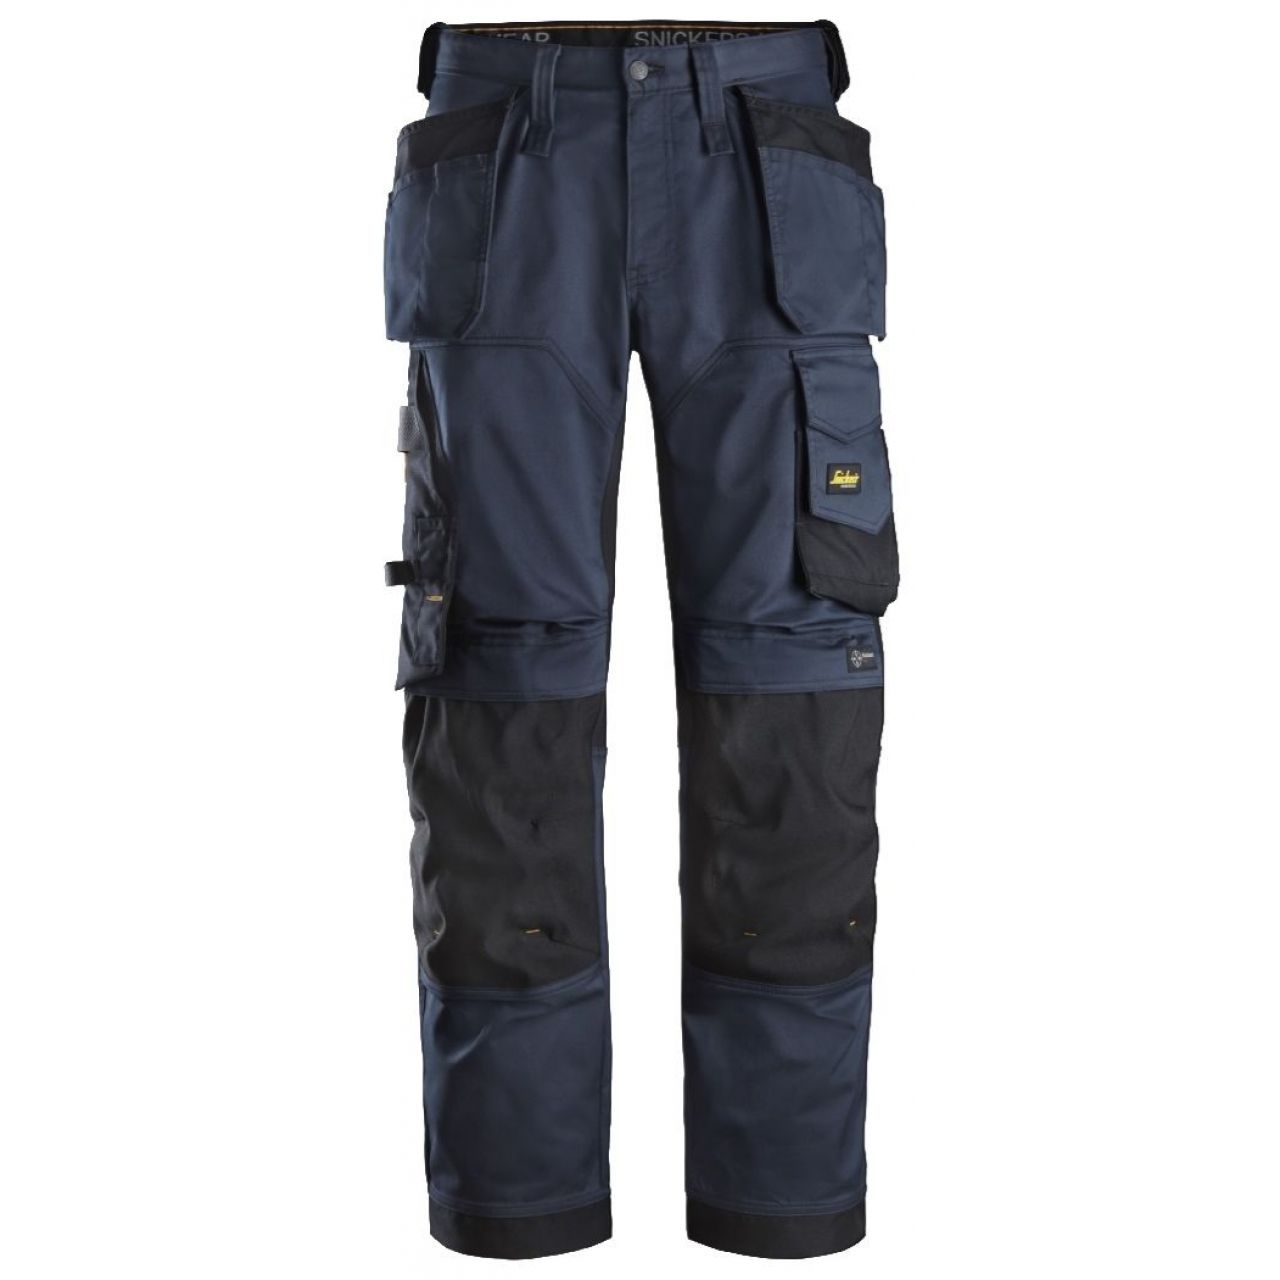 Pantalon elastico ajuste holgado AllroundWork bolsillos flotantes azul marino-negro talla 124